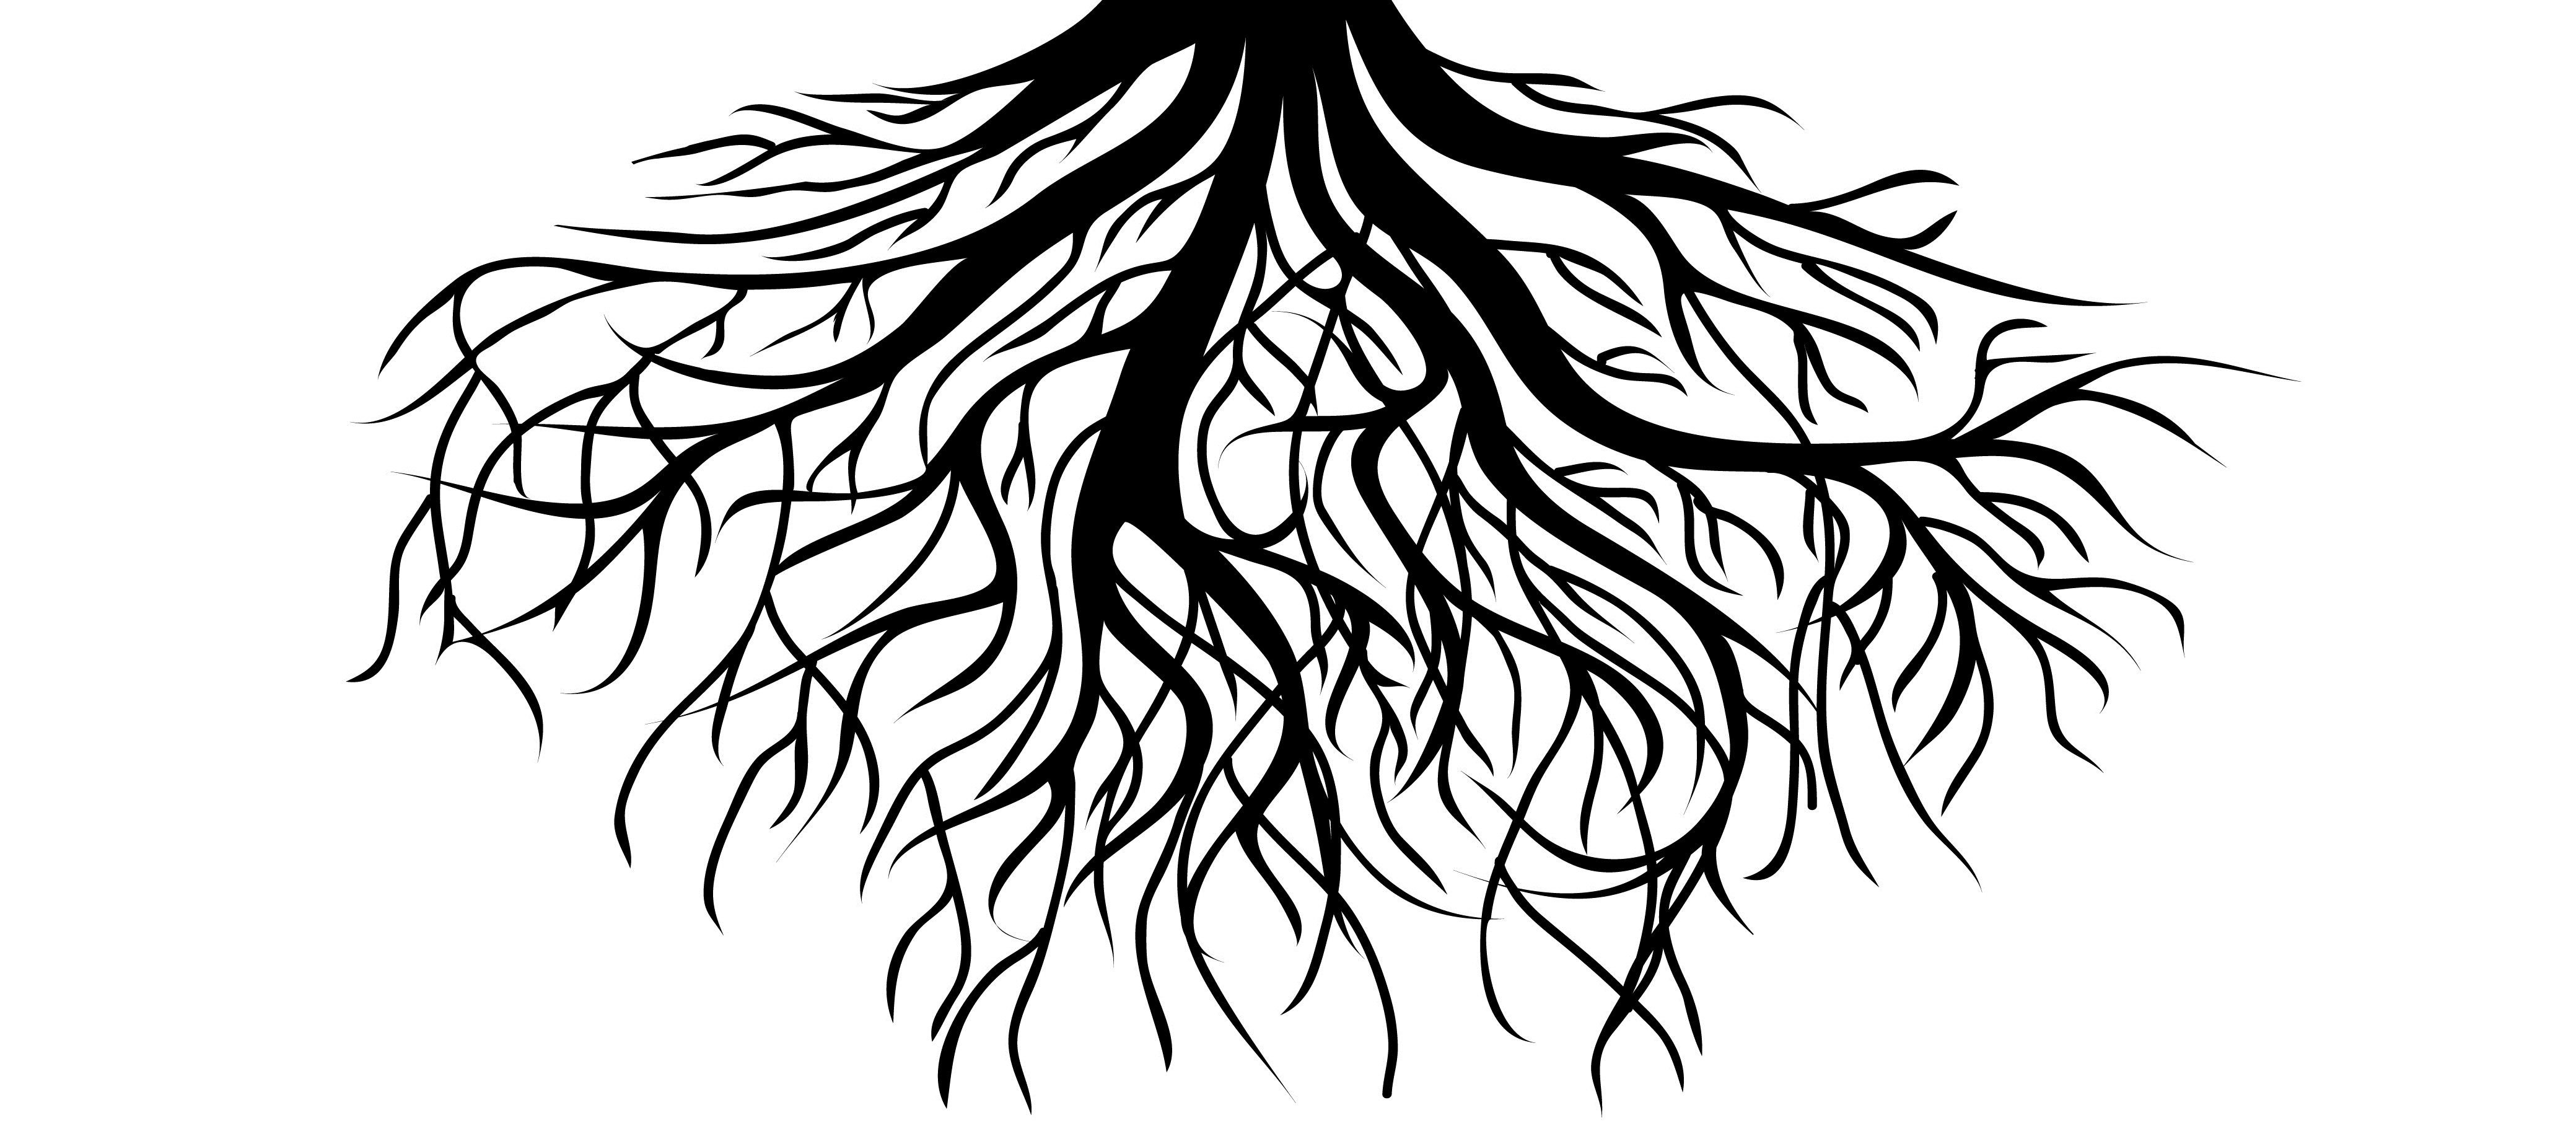 Корни черно белая. Корни дерева. Силуэт дерева. Дерево на прозрачном фоне. Дерево с корнями вектор.